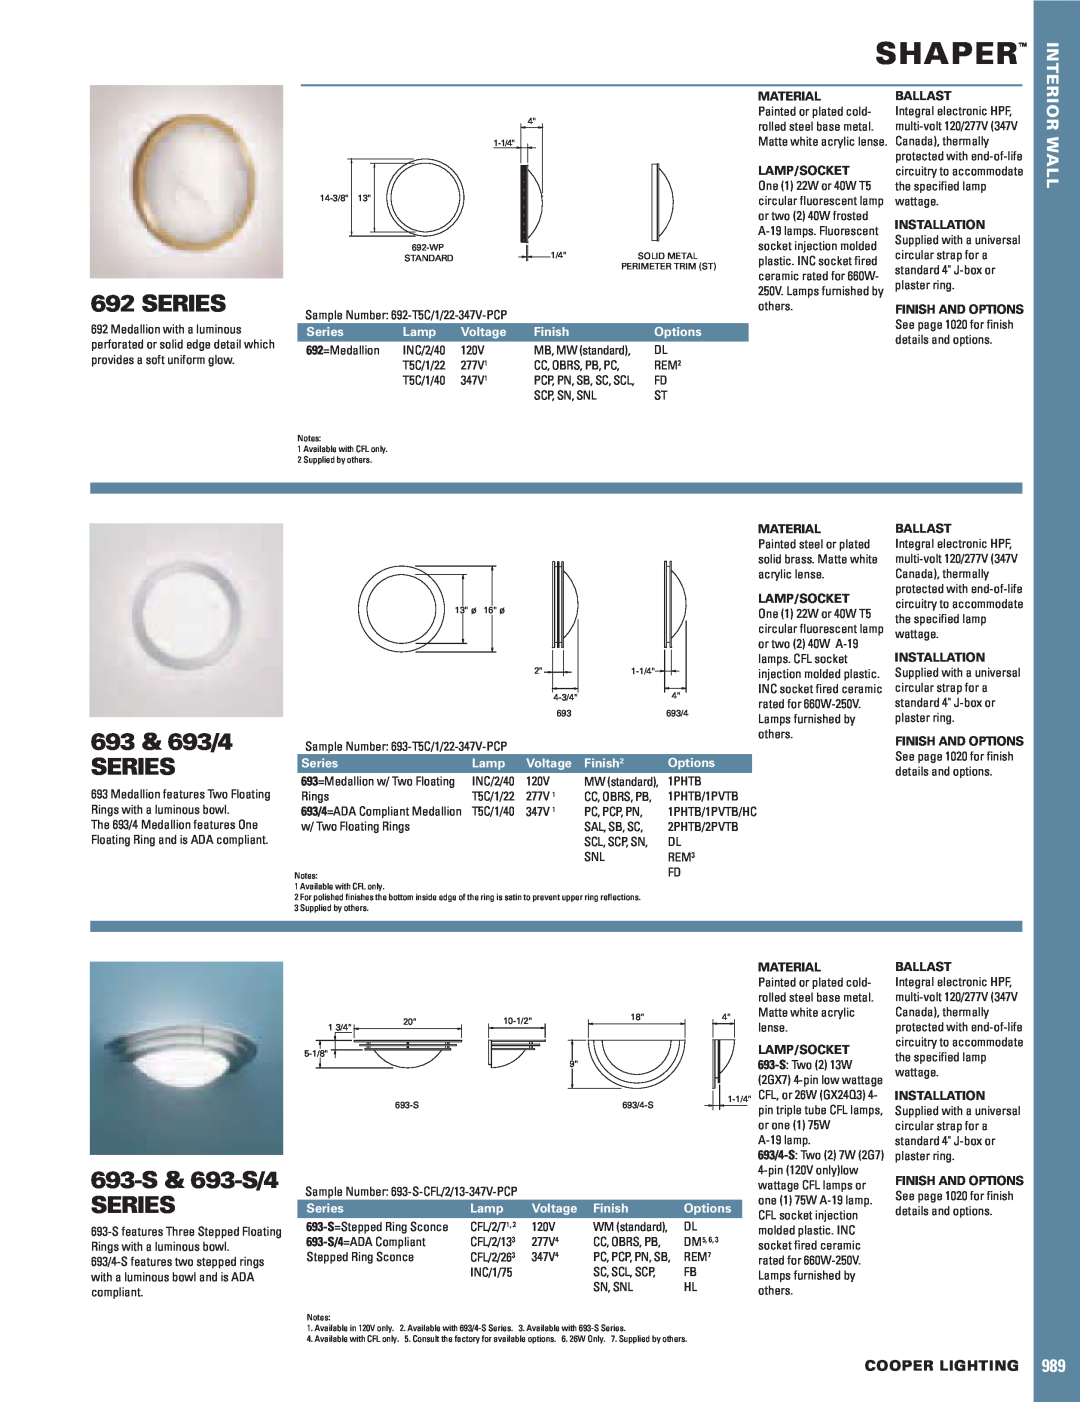 Cooper Lighting manual Shaper, Series, 693 & 693/4 SERIES, 693-S& 693-S/4 SERIES, Wall, Cooper Lighting, Lamp, Voltage 